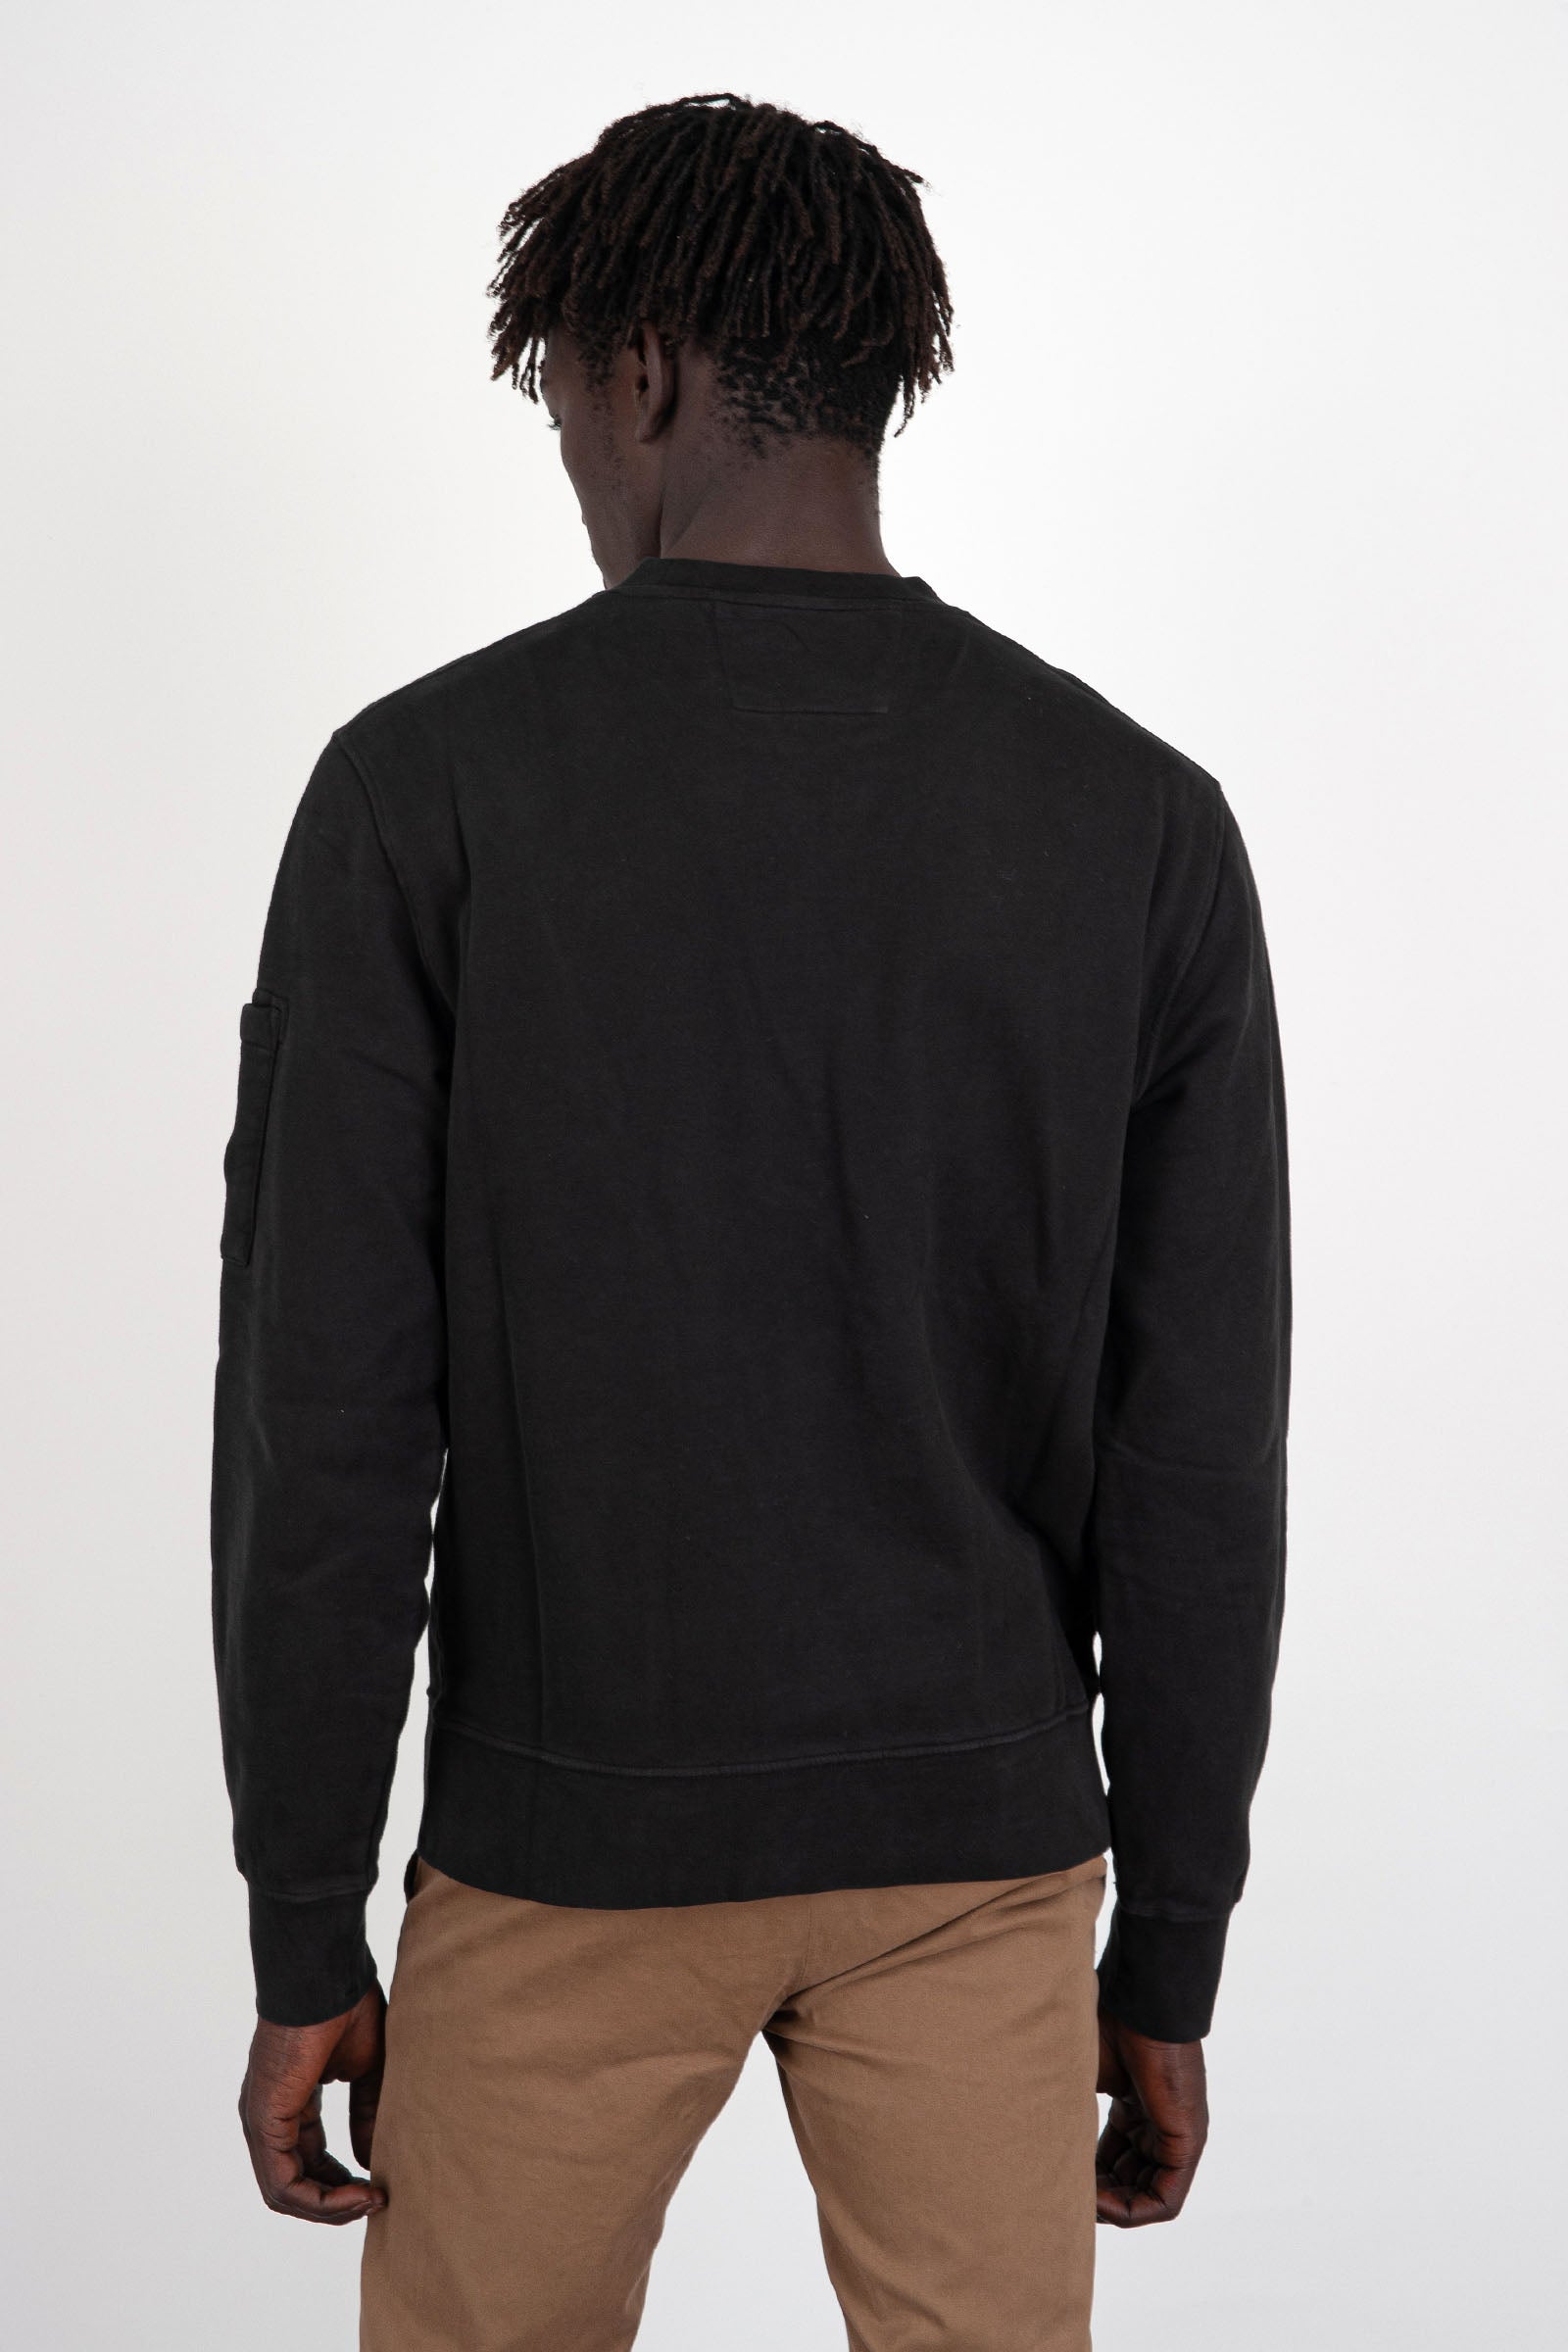 Diagonal Fleece Brushed Emerized Black Men's Sweatshirt - 4